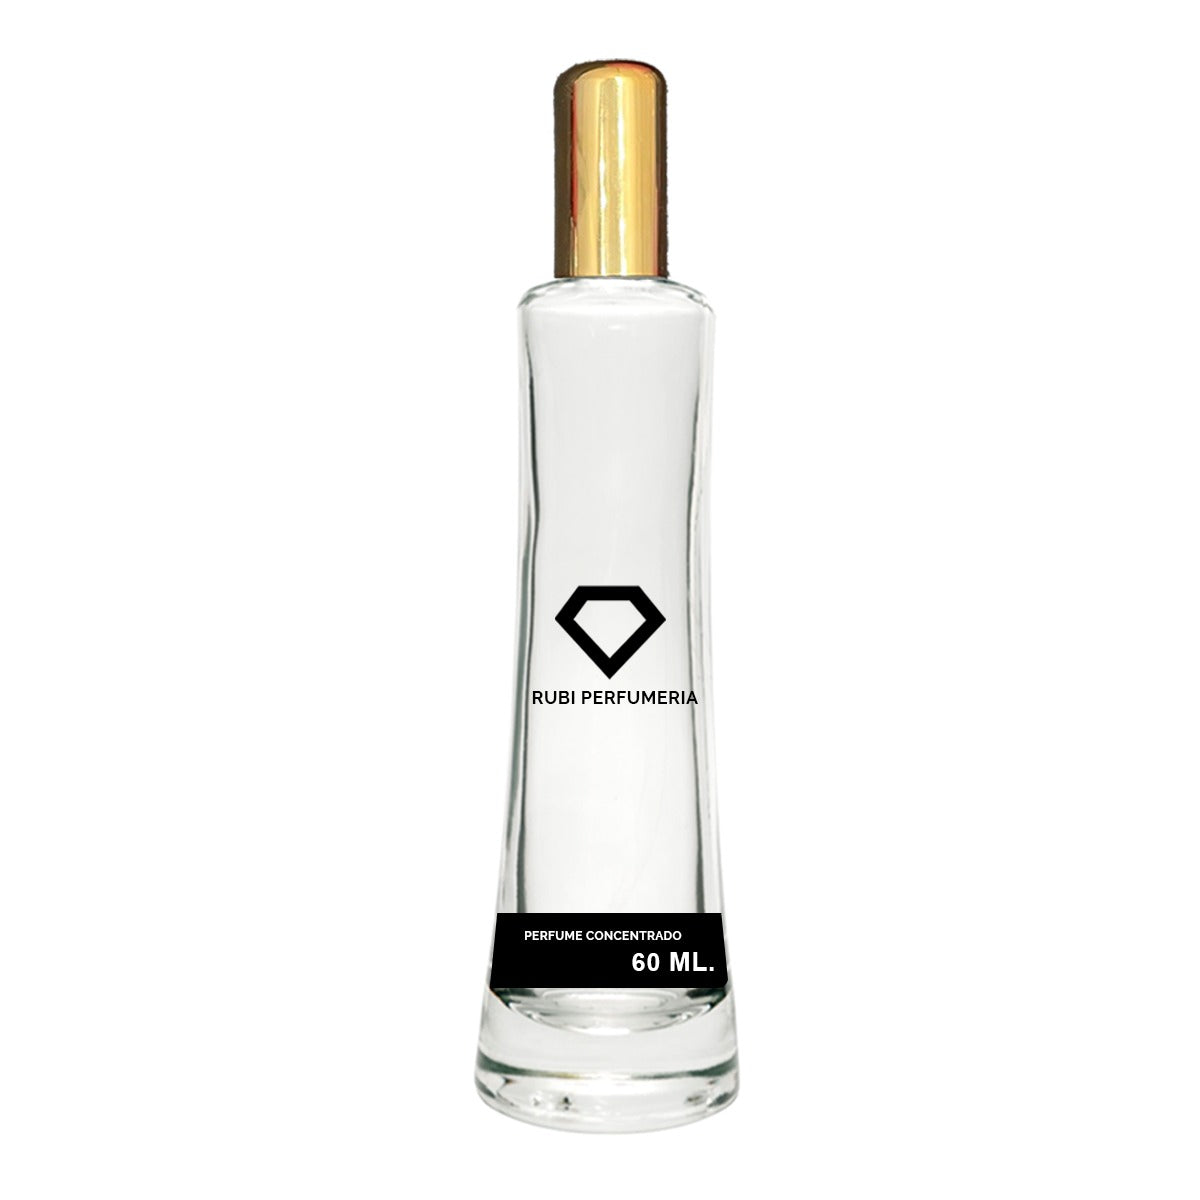 Ombre Nomade es un Eau de Parfum de @louisvuitton que es literalmente